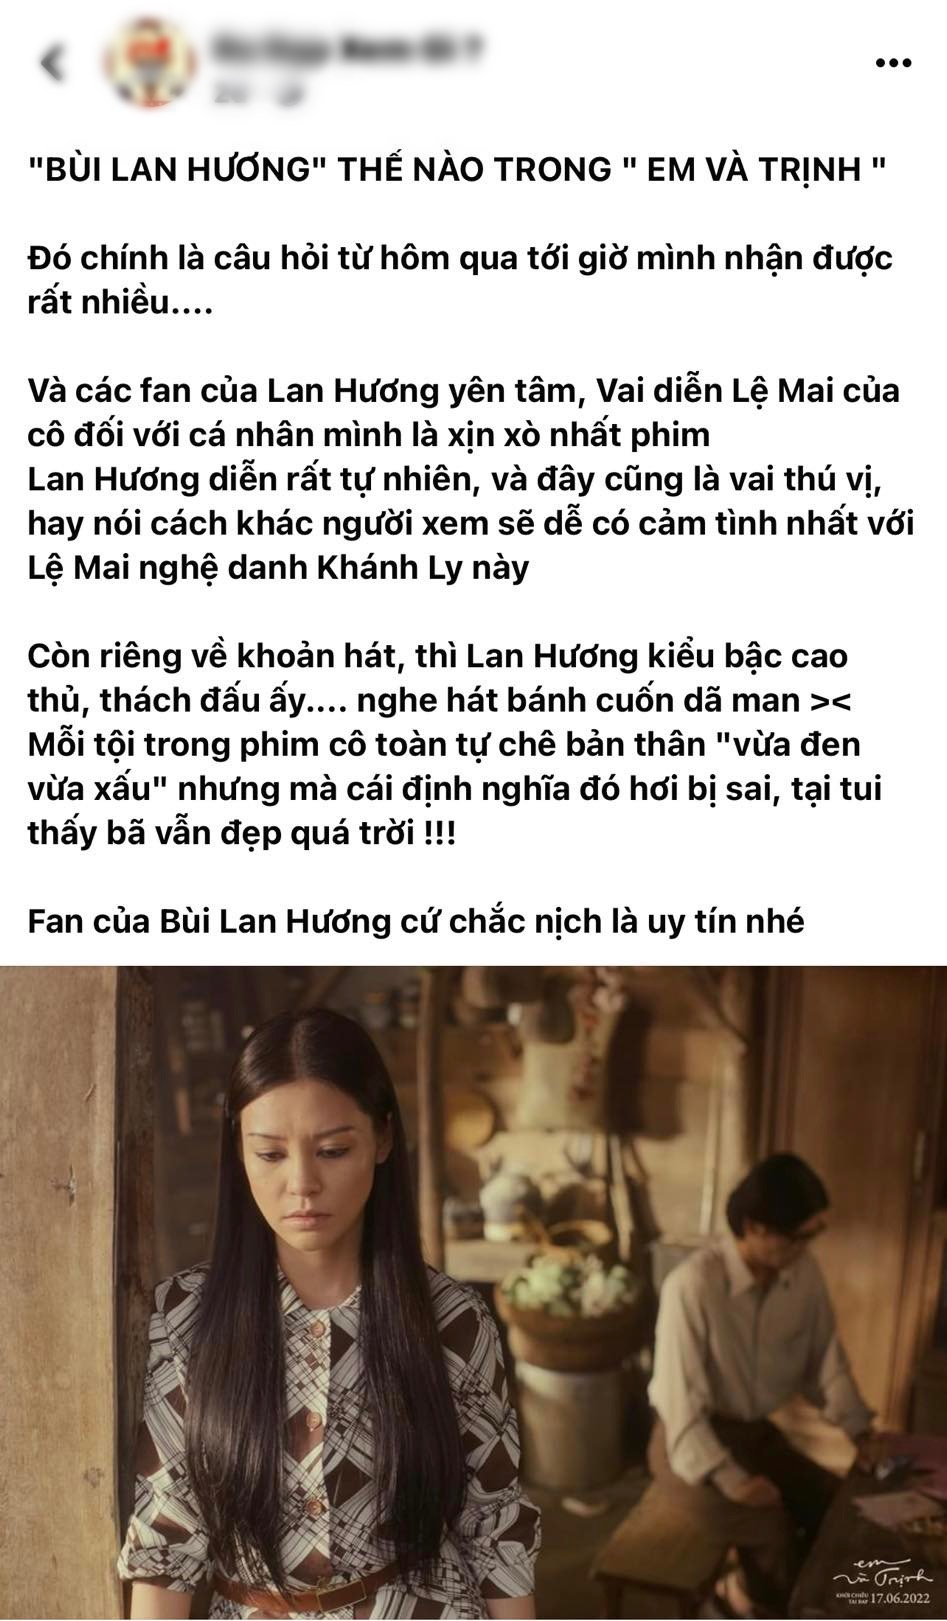 Bùi Lan Hương nhận 'cơn mưa' lời khen diễn xuất sau 2 buổi công chiếu Em và Trịnh & Trịnh Công Sơn - ảnh 8